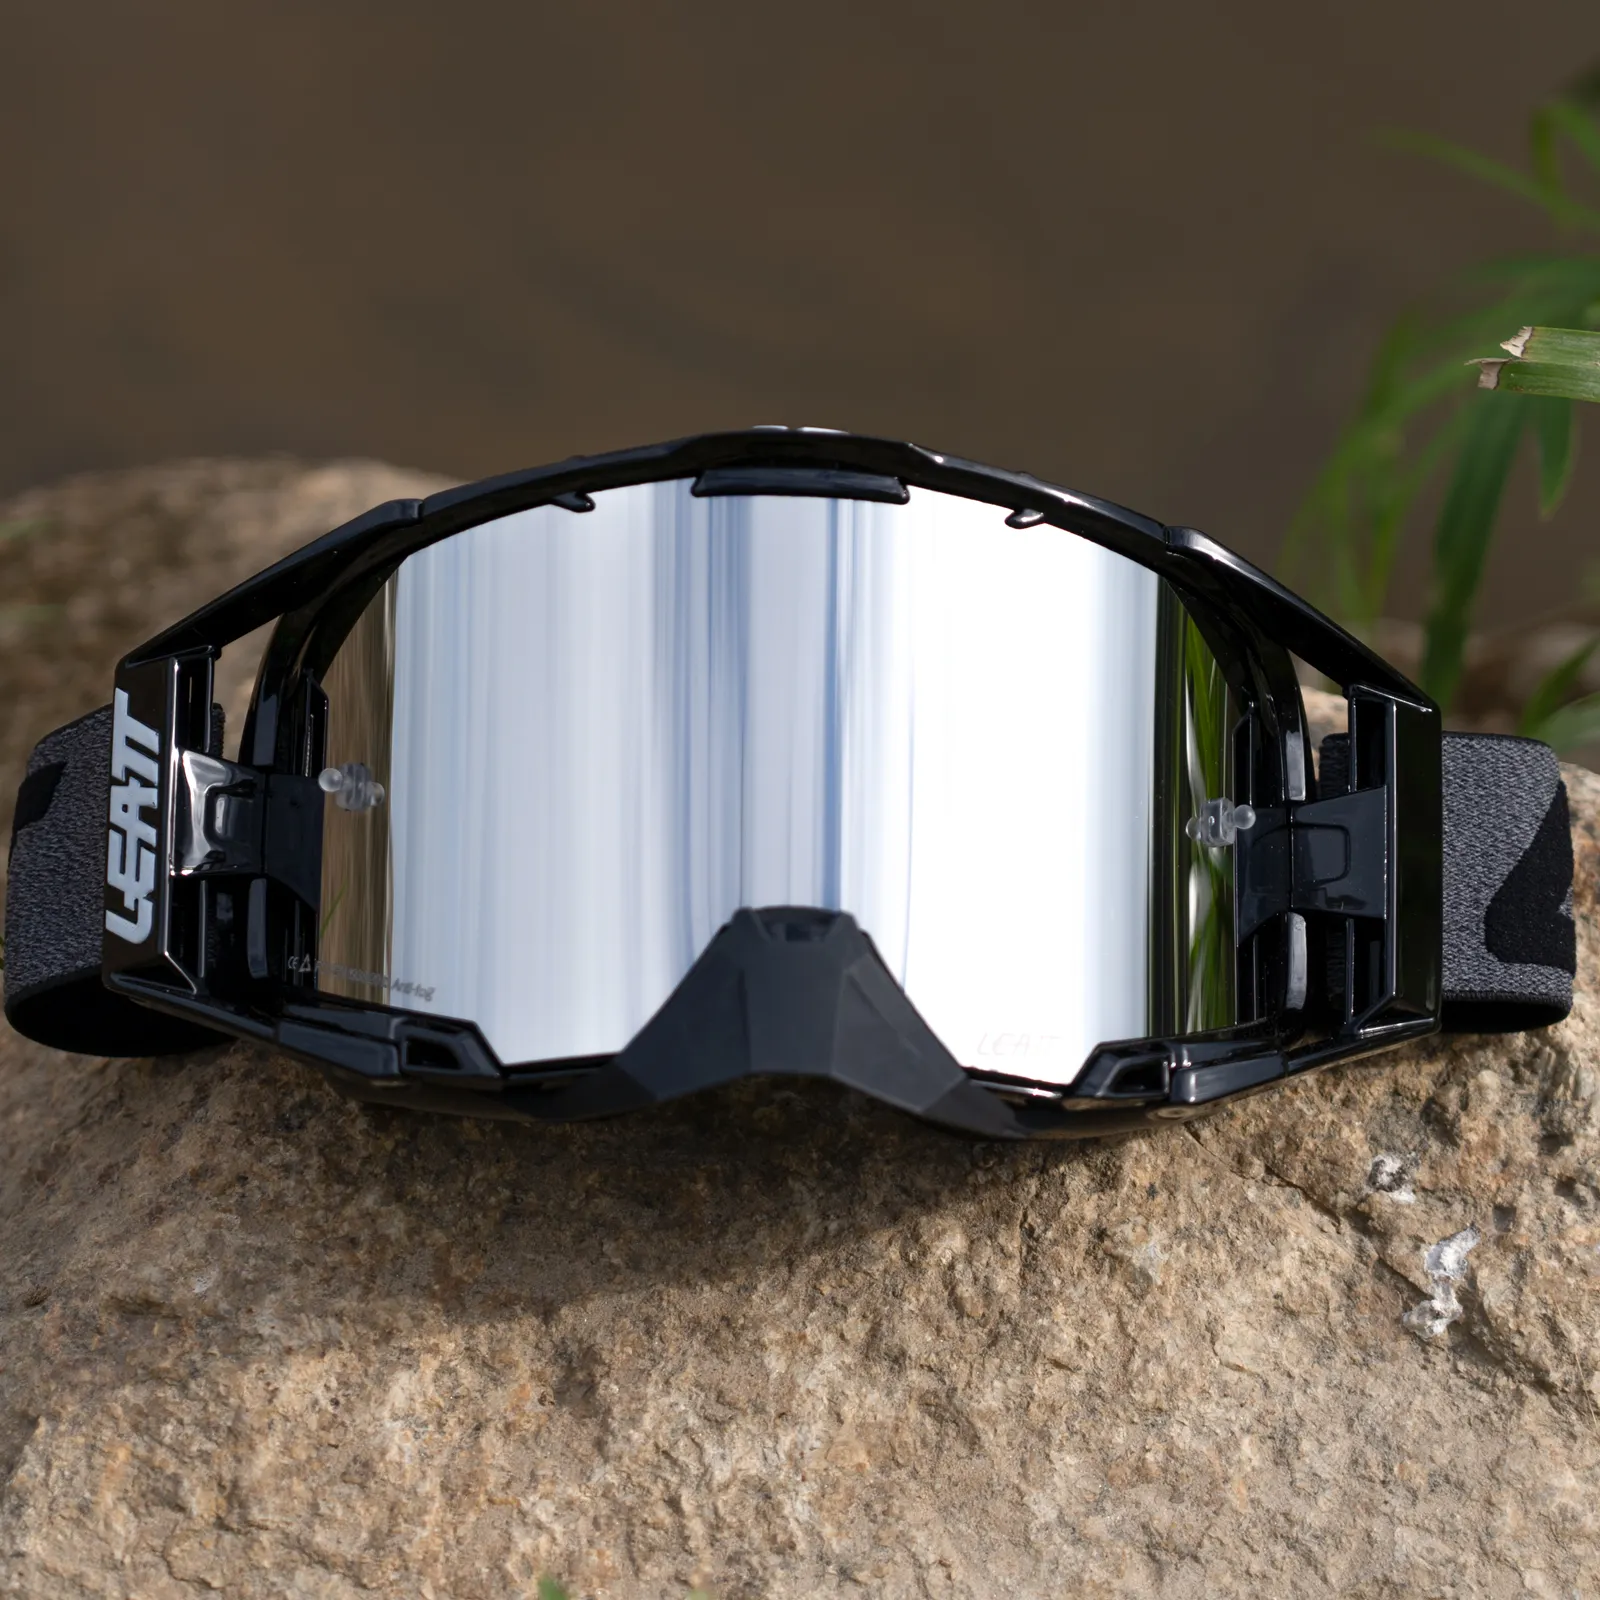 نظارات MX MX الموتوكروس المخصصة الممزقة والمضادة للضباب بشكل دائم لحماية الأشعة فوق البنفسجية OEM ATV للدراجات النارية على الطرق الوعرة نظارات واقية للدراجات الترابية